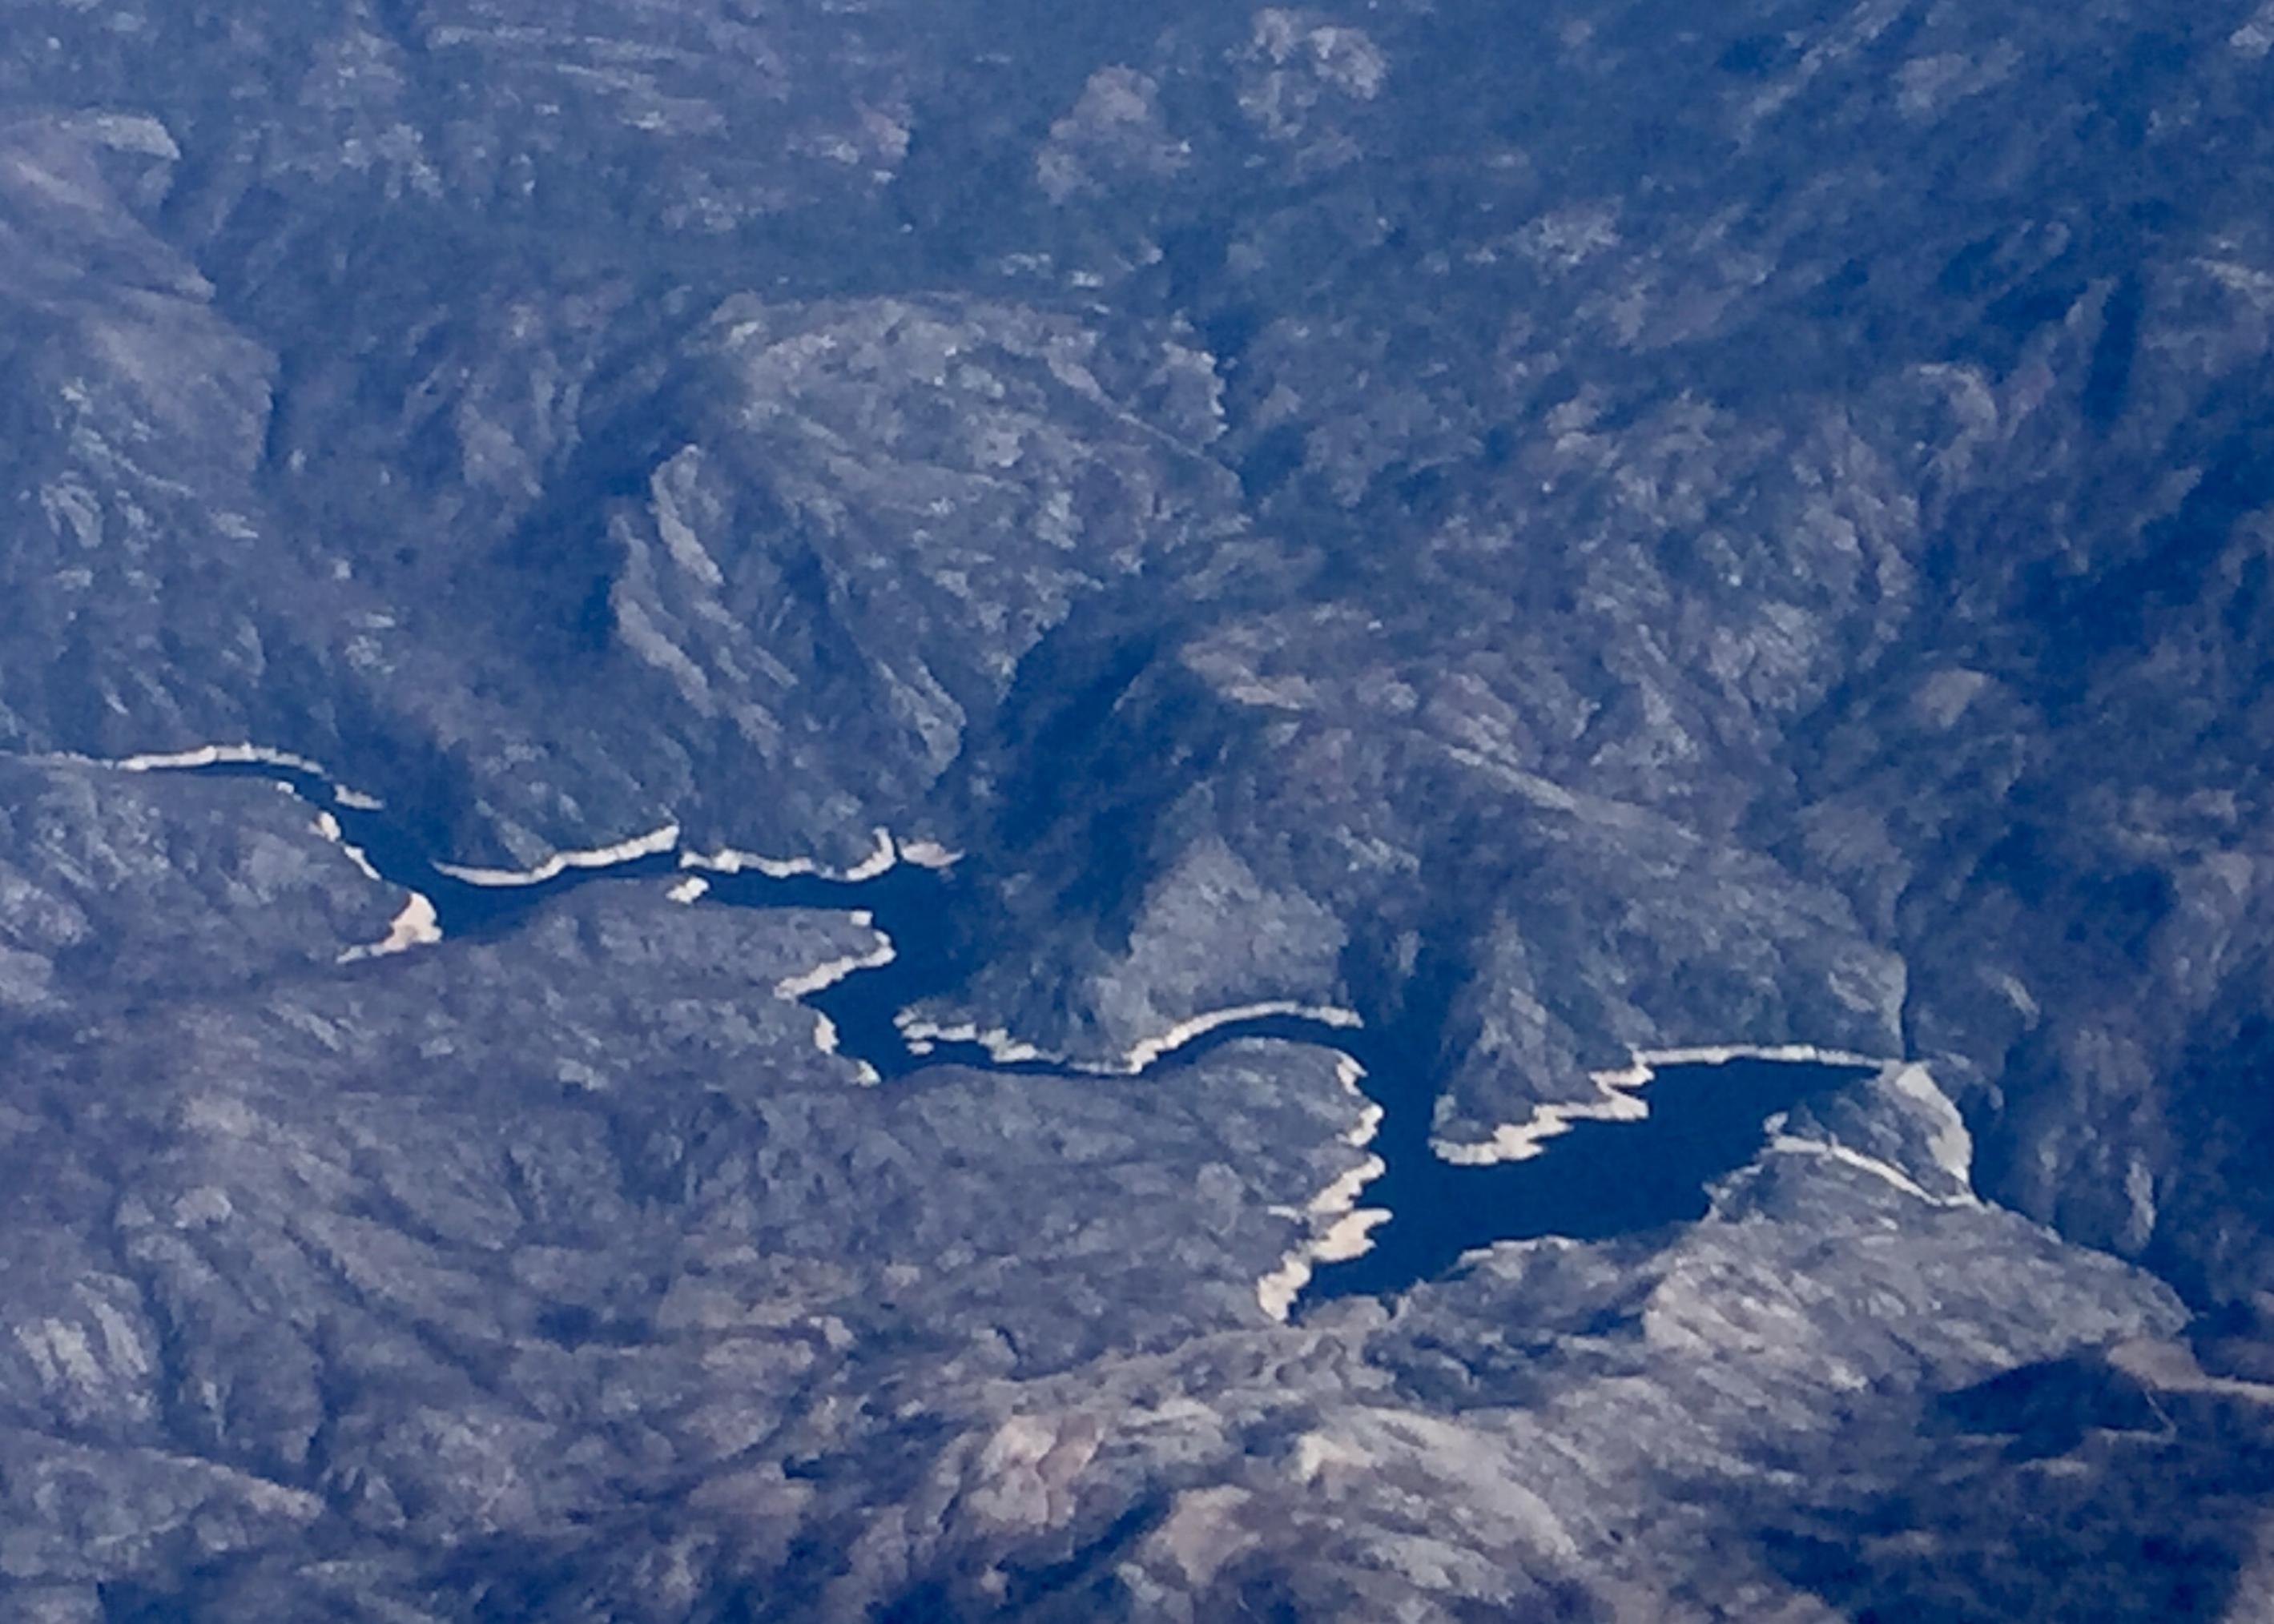 Luftbild von einem See in Kalifornien mit breitem hellen Rand am Ufer rundherum. Der zeigt den normalen Wasserstand an und damit, wie wenig es in den letzten Jahren geregnet hat.